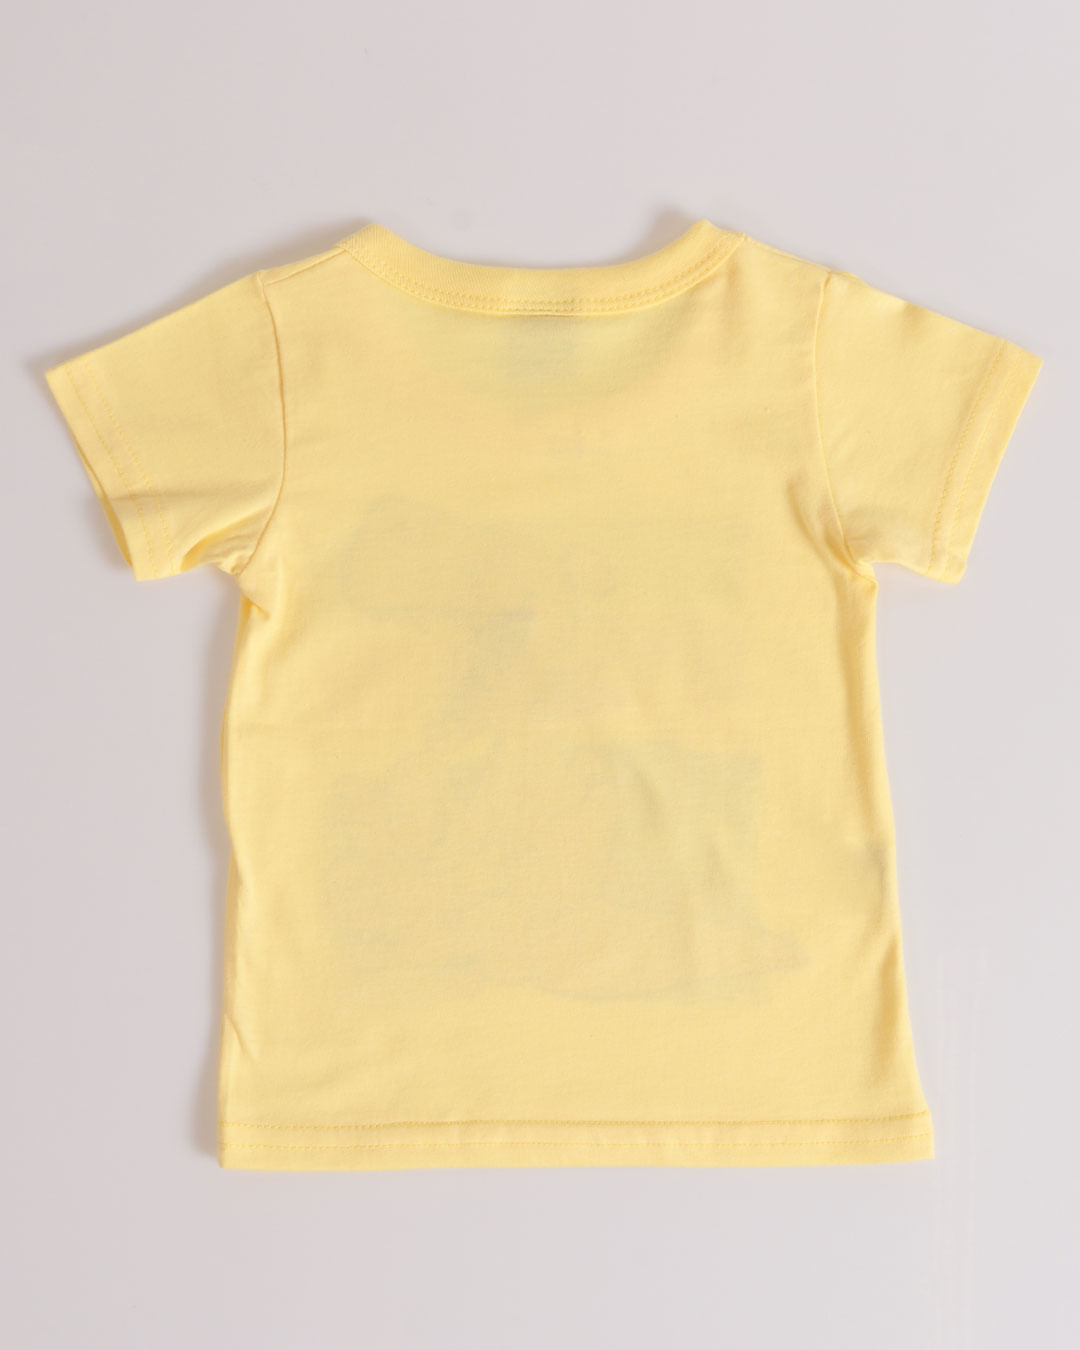 Camiseta-13804-Mpg---Amarelo-Claro